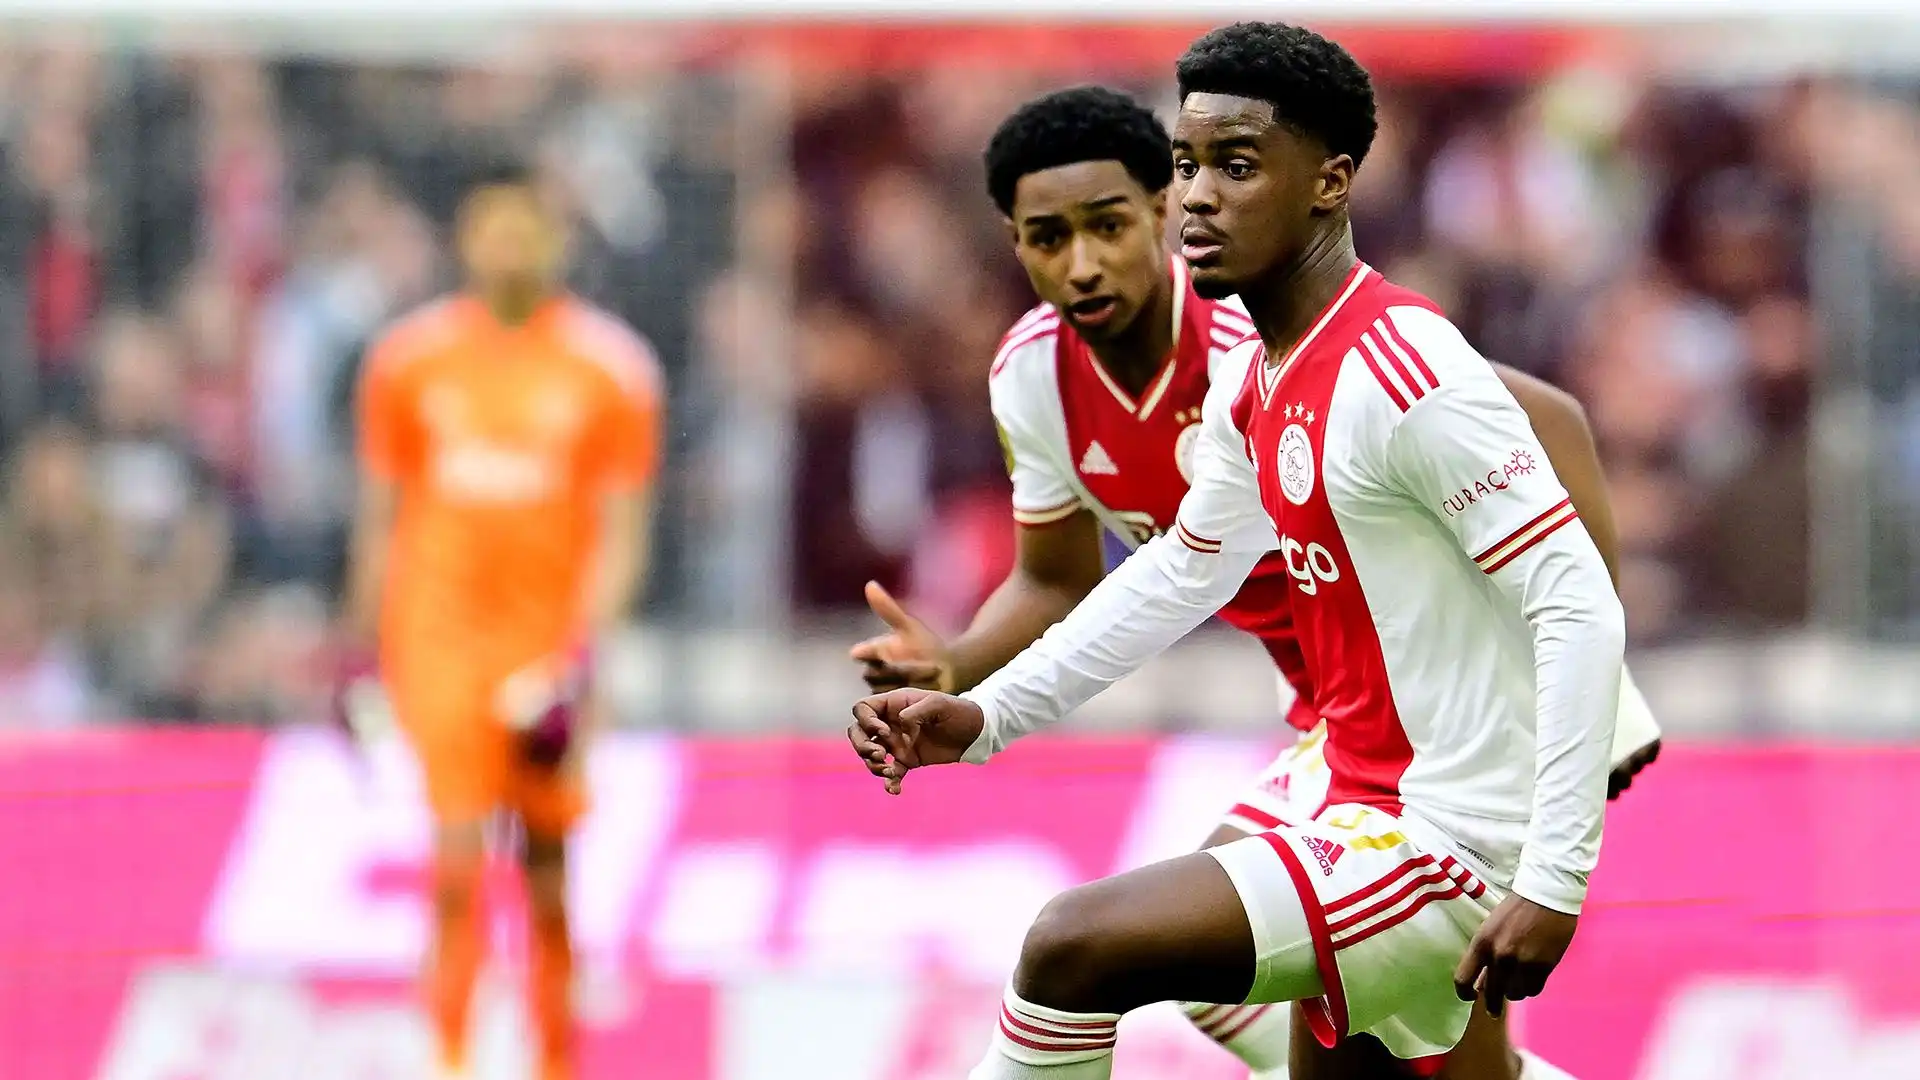 È entrato nelle giovanili dell'Ajax nel 2018 e da allora si è fatto sempre più strada